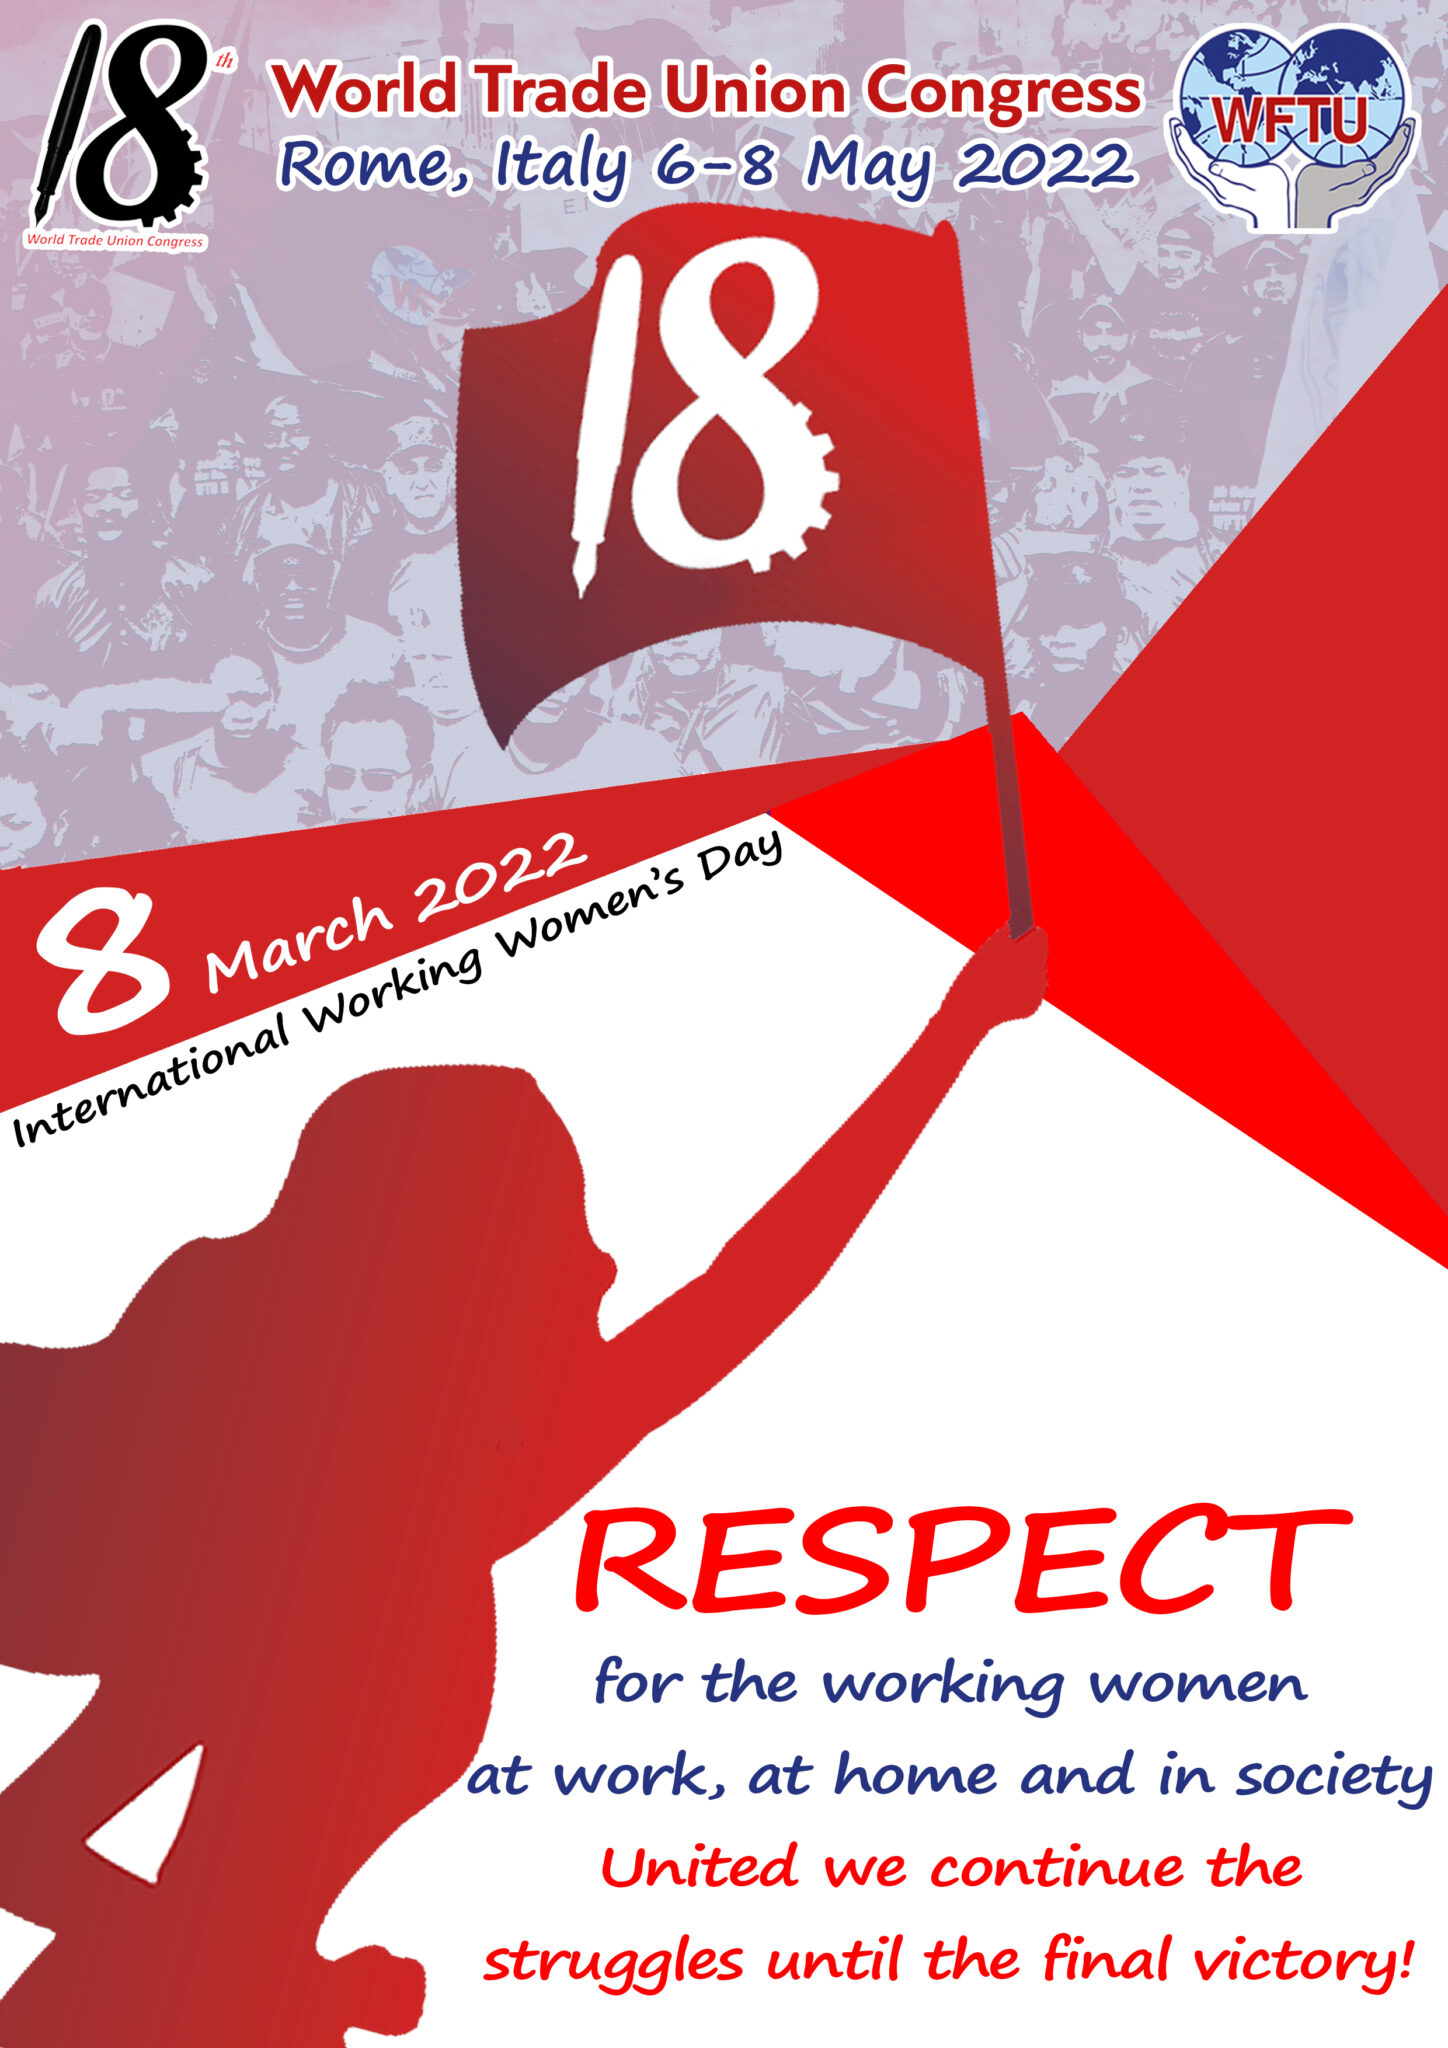 WFTU Statement on Working Women’s Day